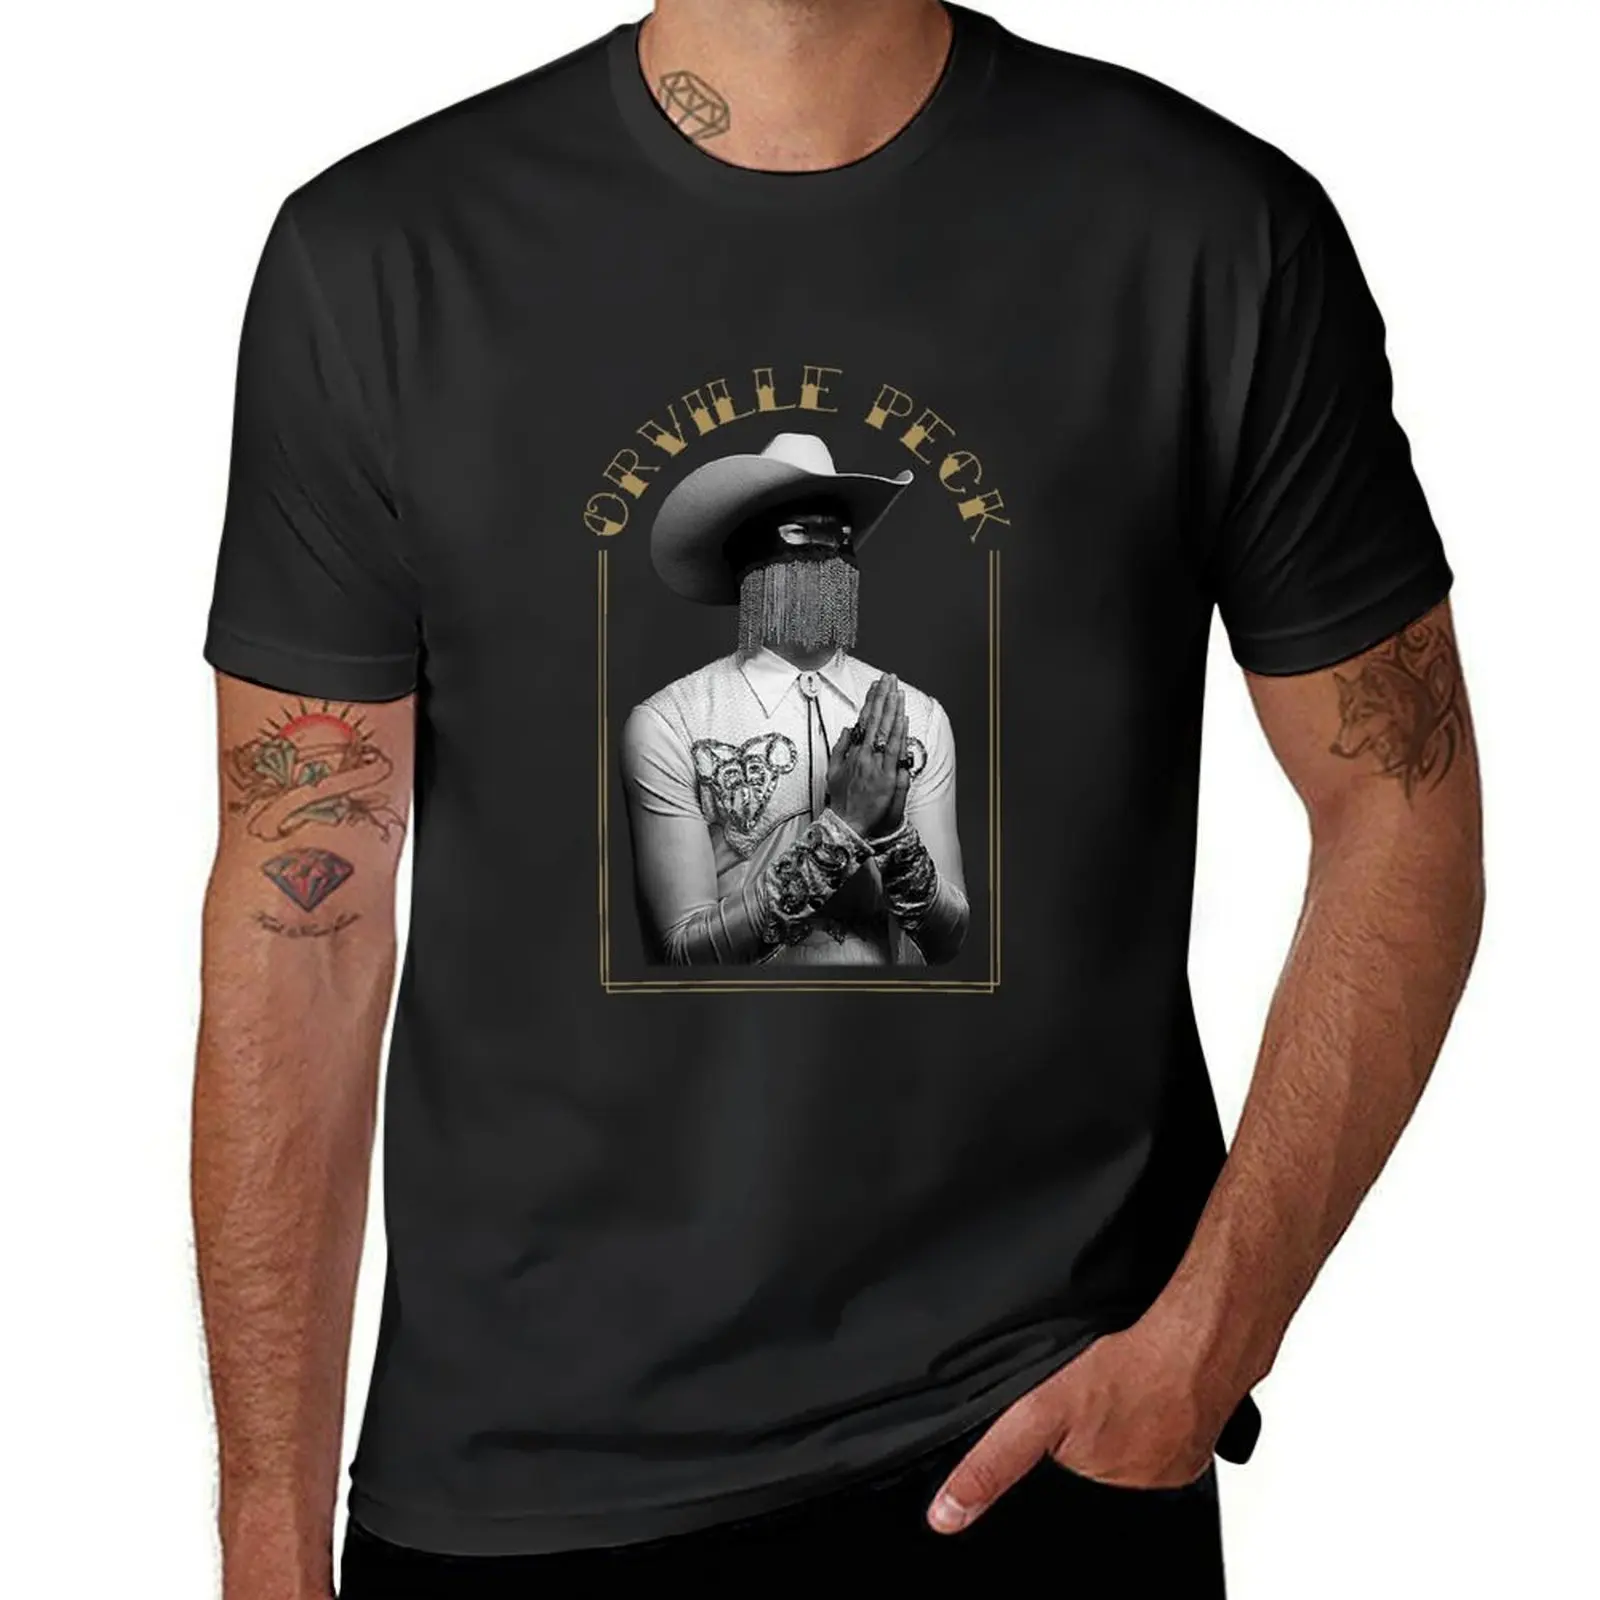 

Orville music Peck Vintage. T-Shirt aesthetic clothes cute clothes plain black t shirts men